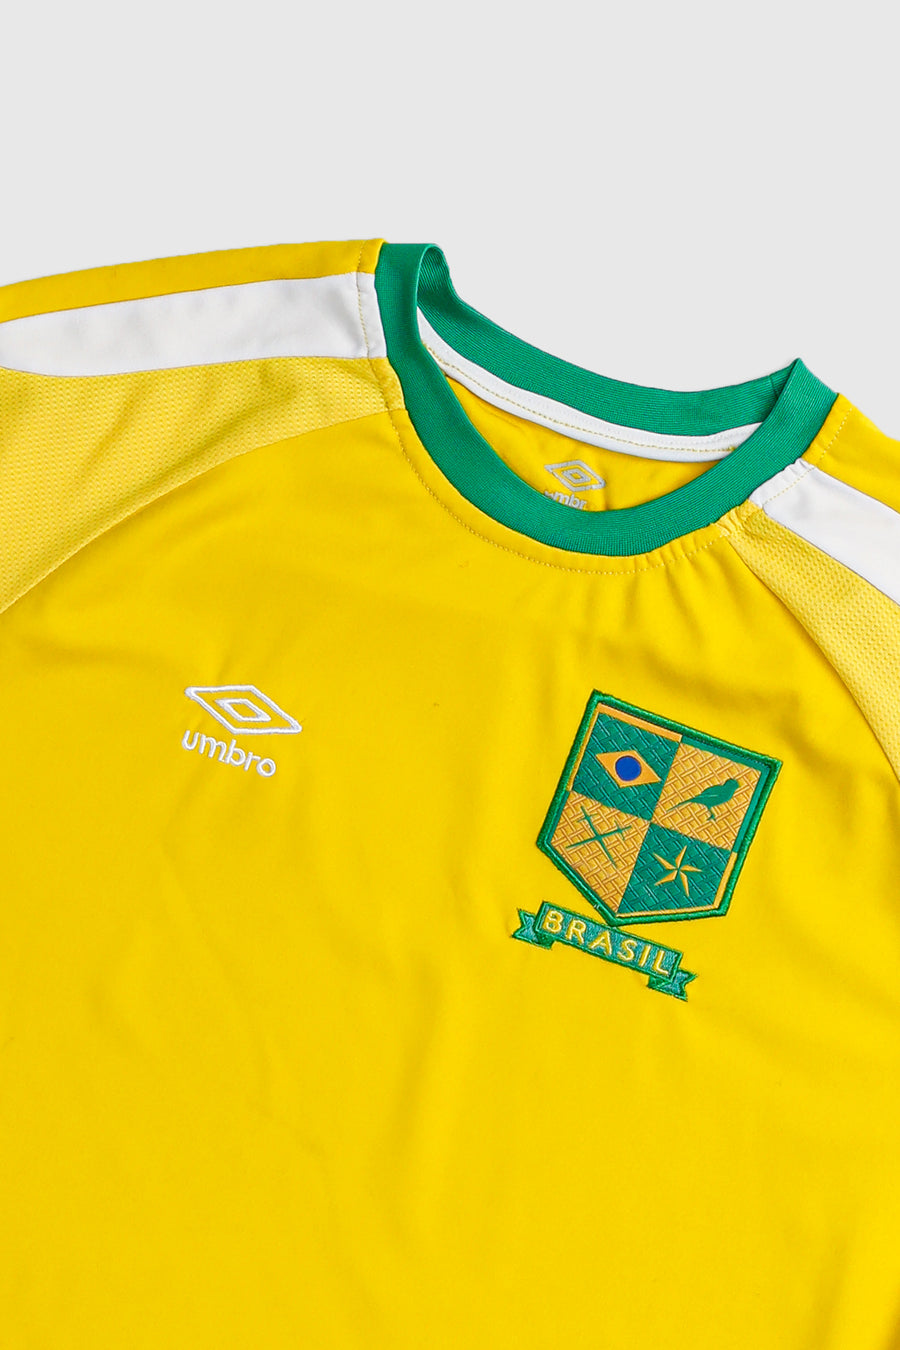 Vintage Brazil Soccer Jersey - M